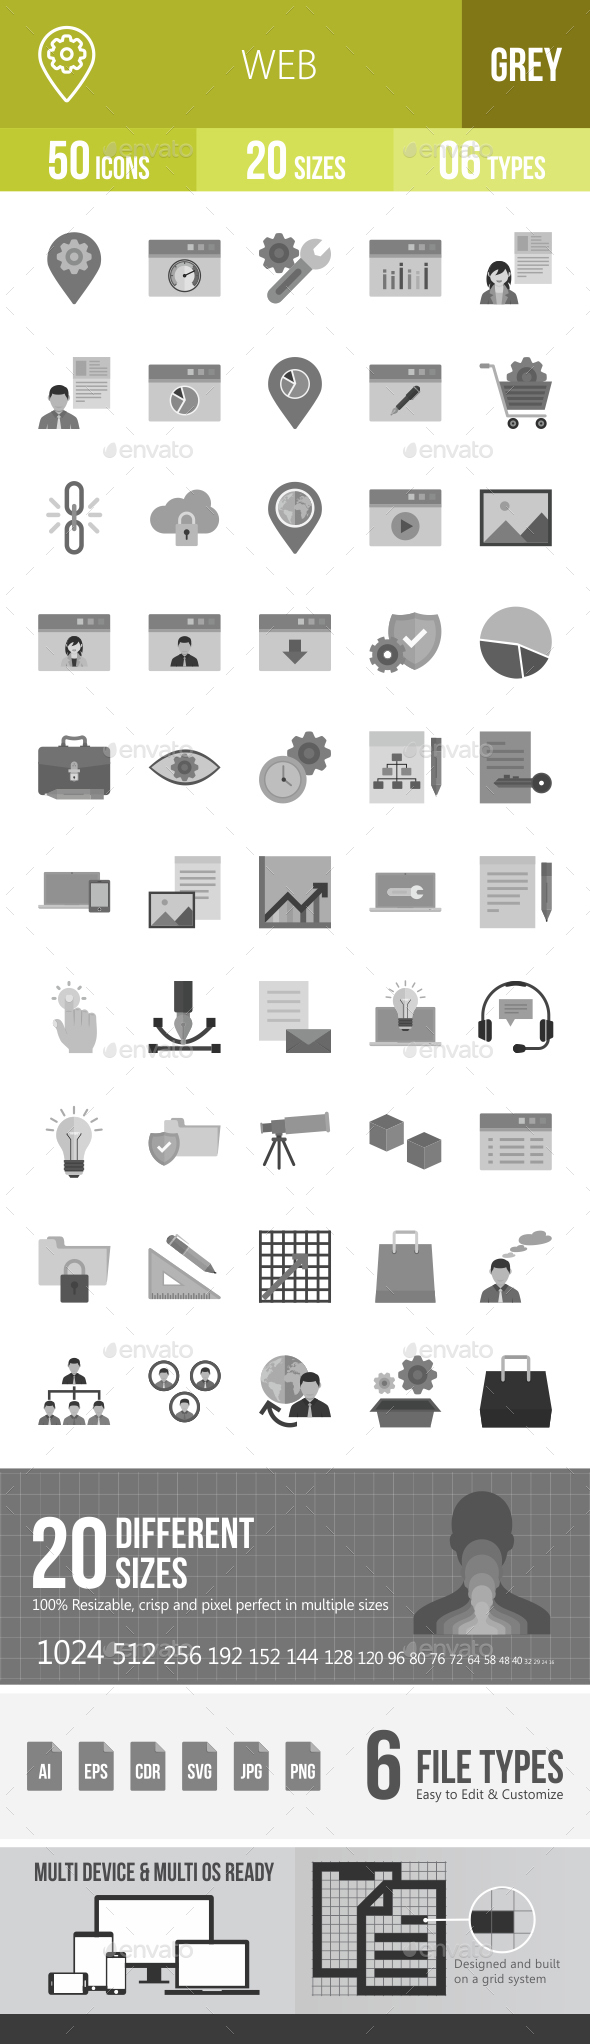 Web Greyscale Icons